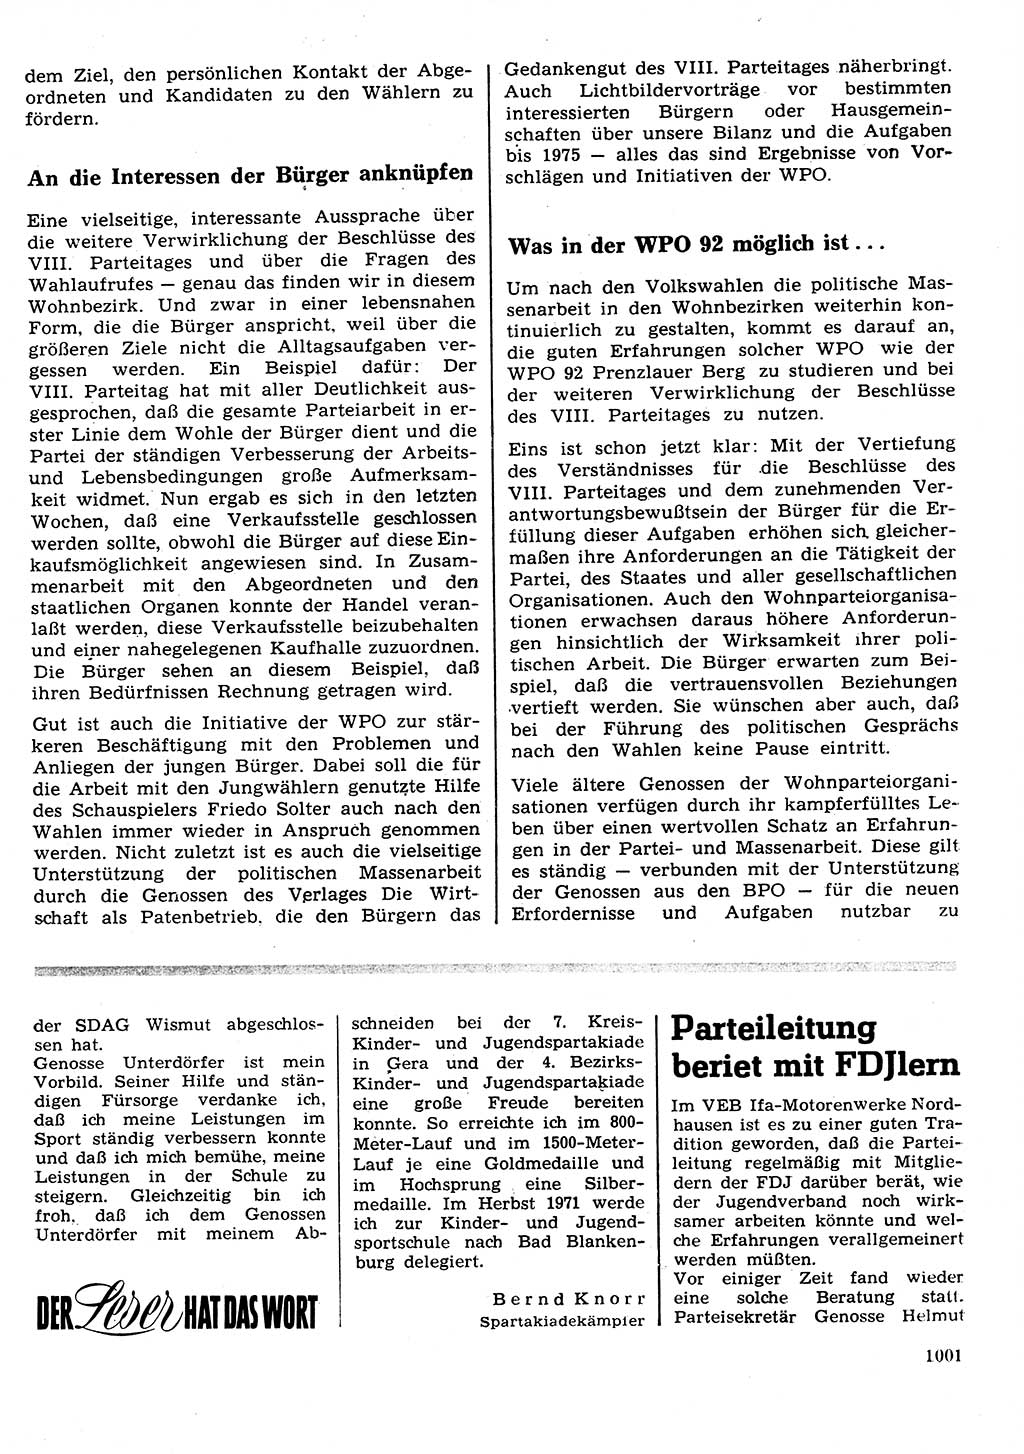 Neuer Weg (NW), Organ des Zentralkomitees (ZK) der SED (Sozialistische Einheitspartei Deutschlands) für Fragen des Parteilebens, 26. Jahrgang [Deutsche Demokratische Republik (DDR)] 1971, Seite 1001 (NW ZK SED DDR 1971, S. 1001)